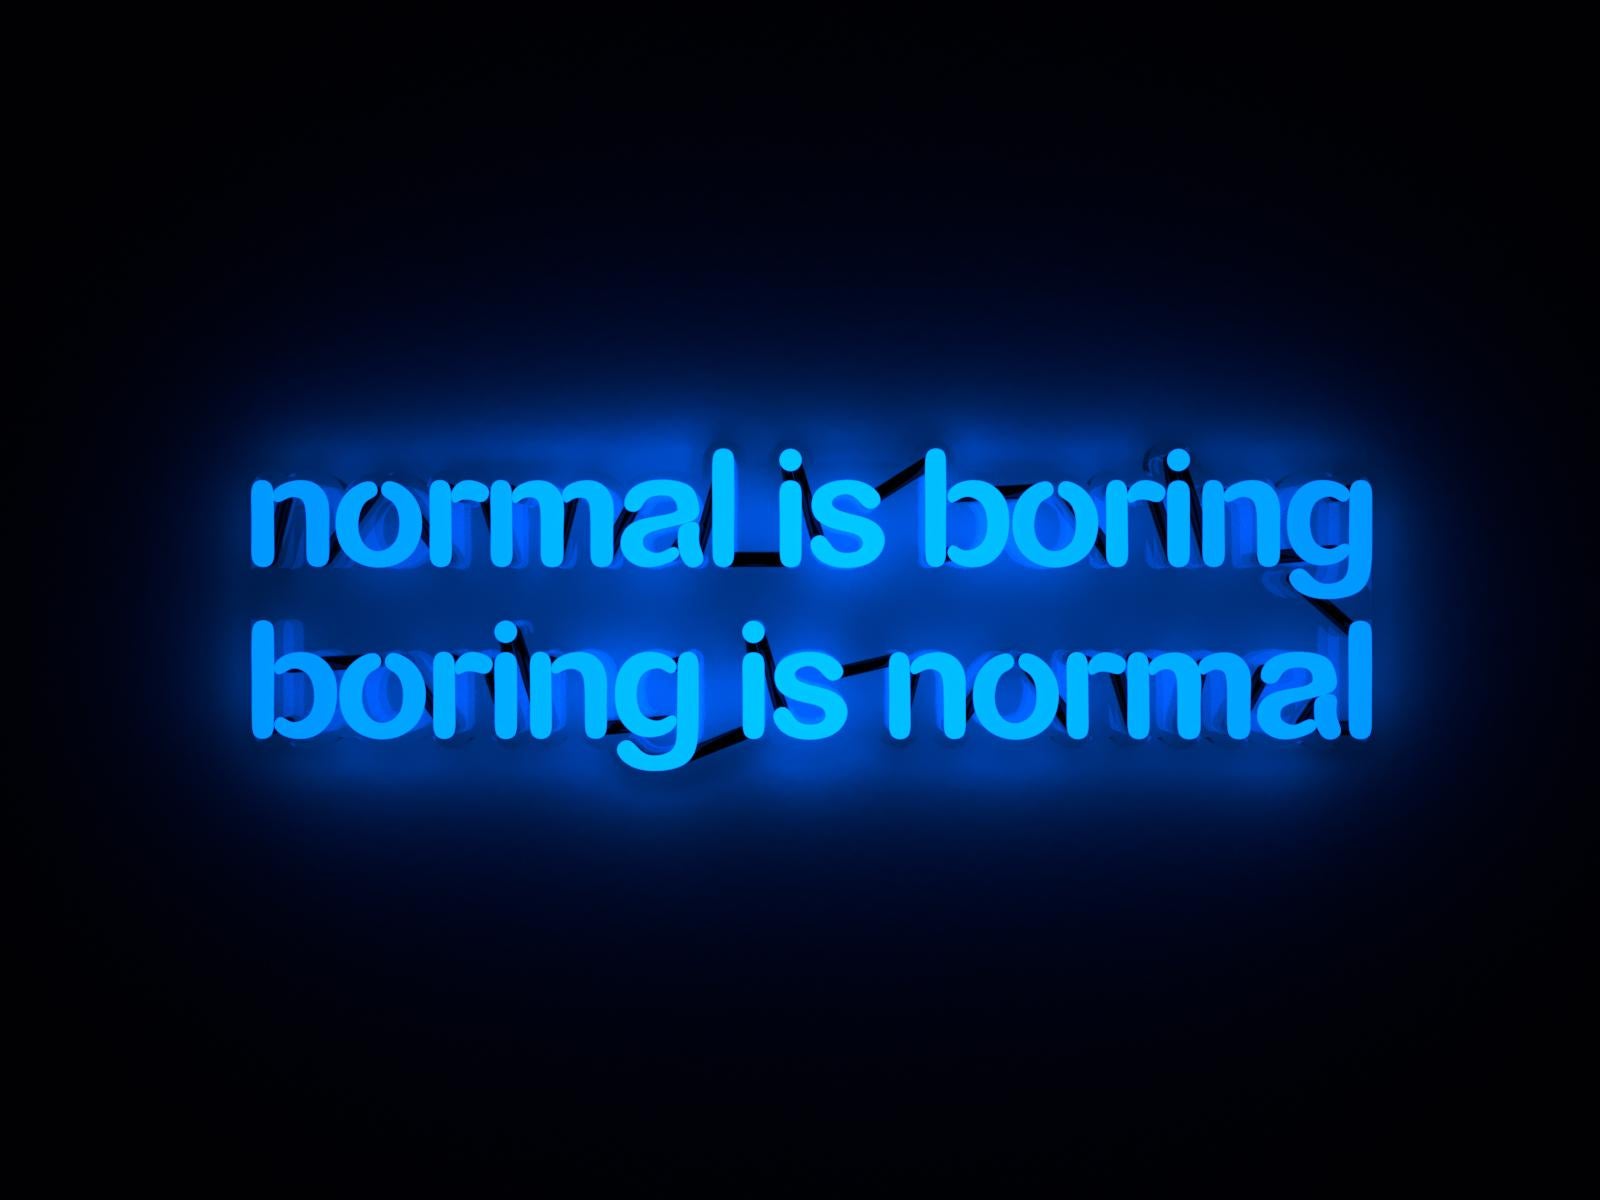 Normal is boring boring is normal - neon art 